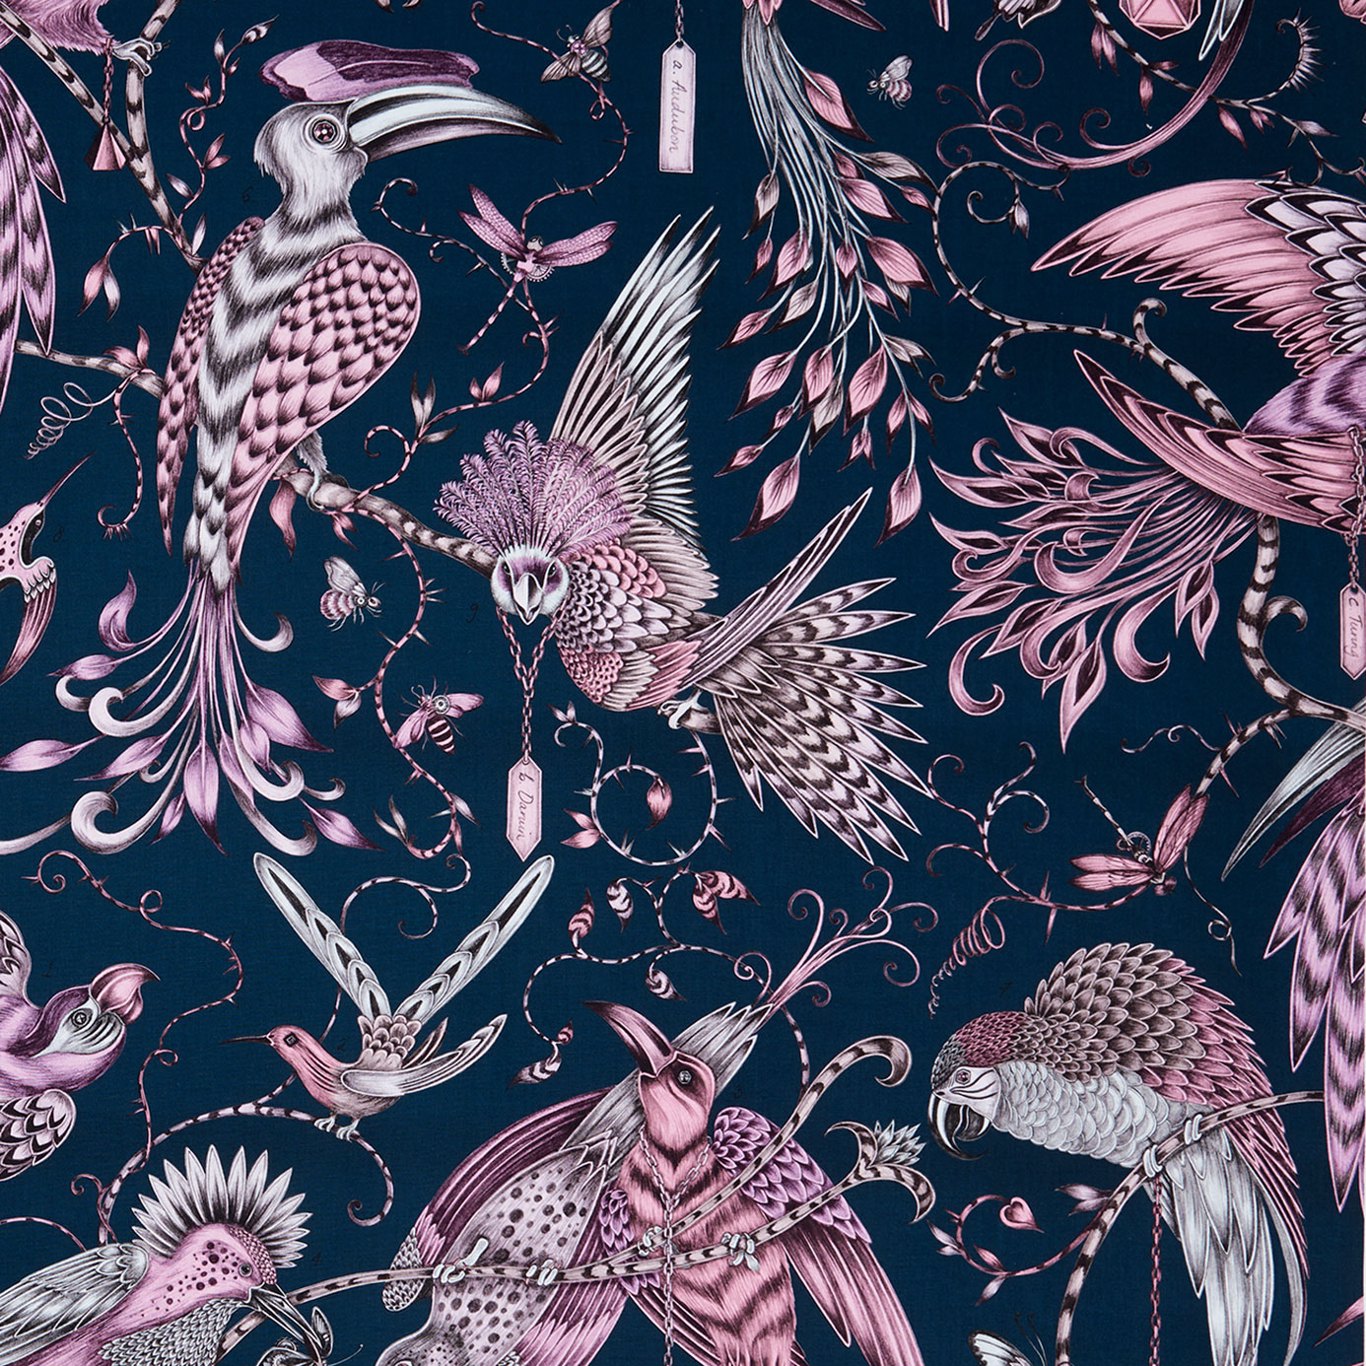 Audubon Fabric by Emma Shipley - F1108/04 - Pink